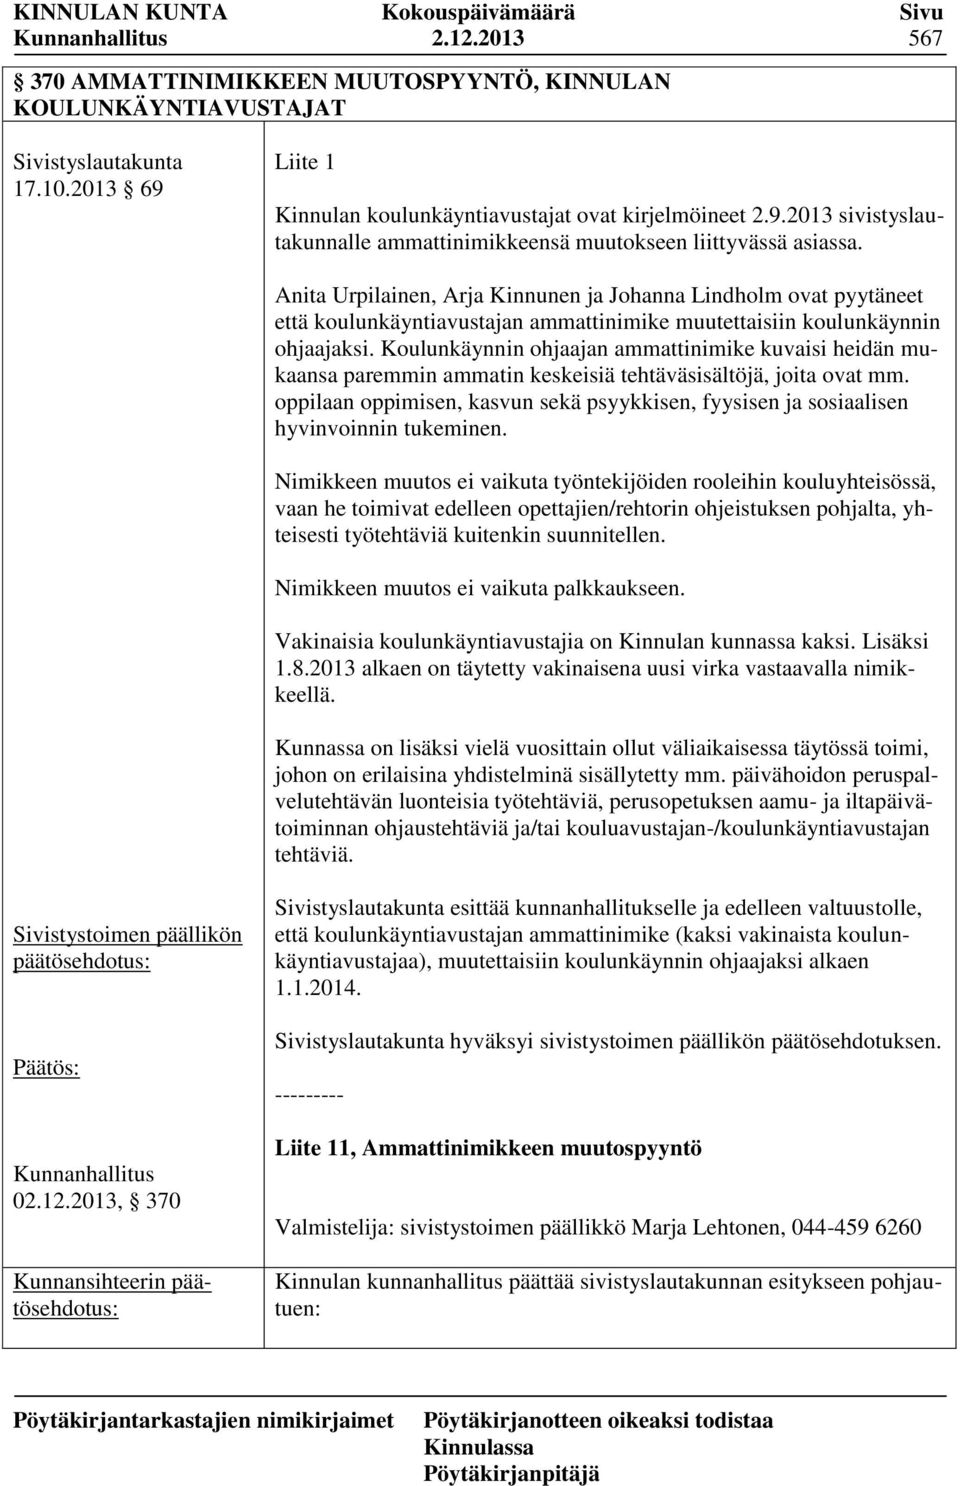 Anita Urpilainen, Arja Kinnunen ja Johanna Lindholm ovat pyytäneet että koulunkäyntiavustajan ammattinimike muutettaisiin koulunkäynnin ohjaajaksi.